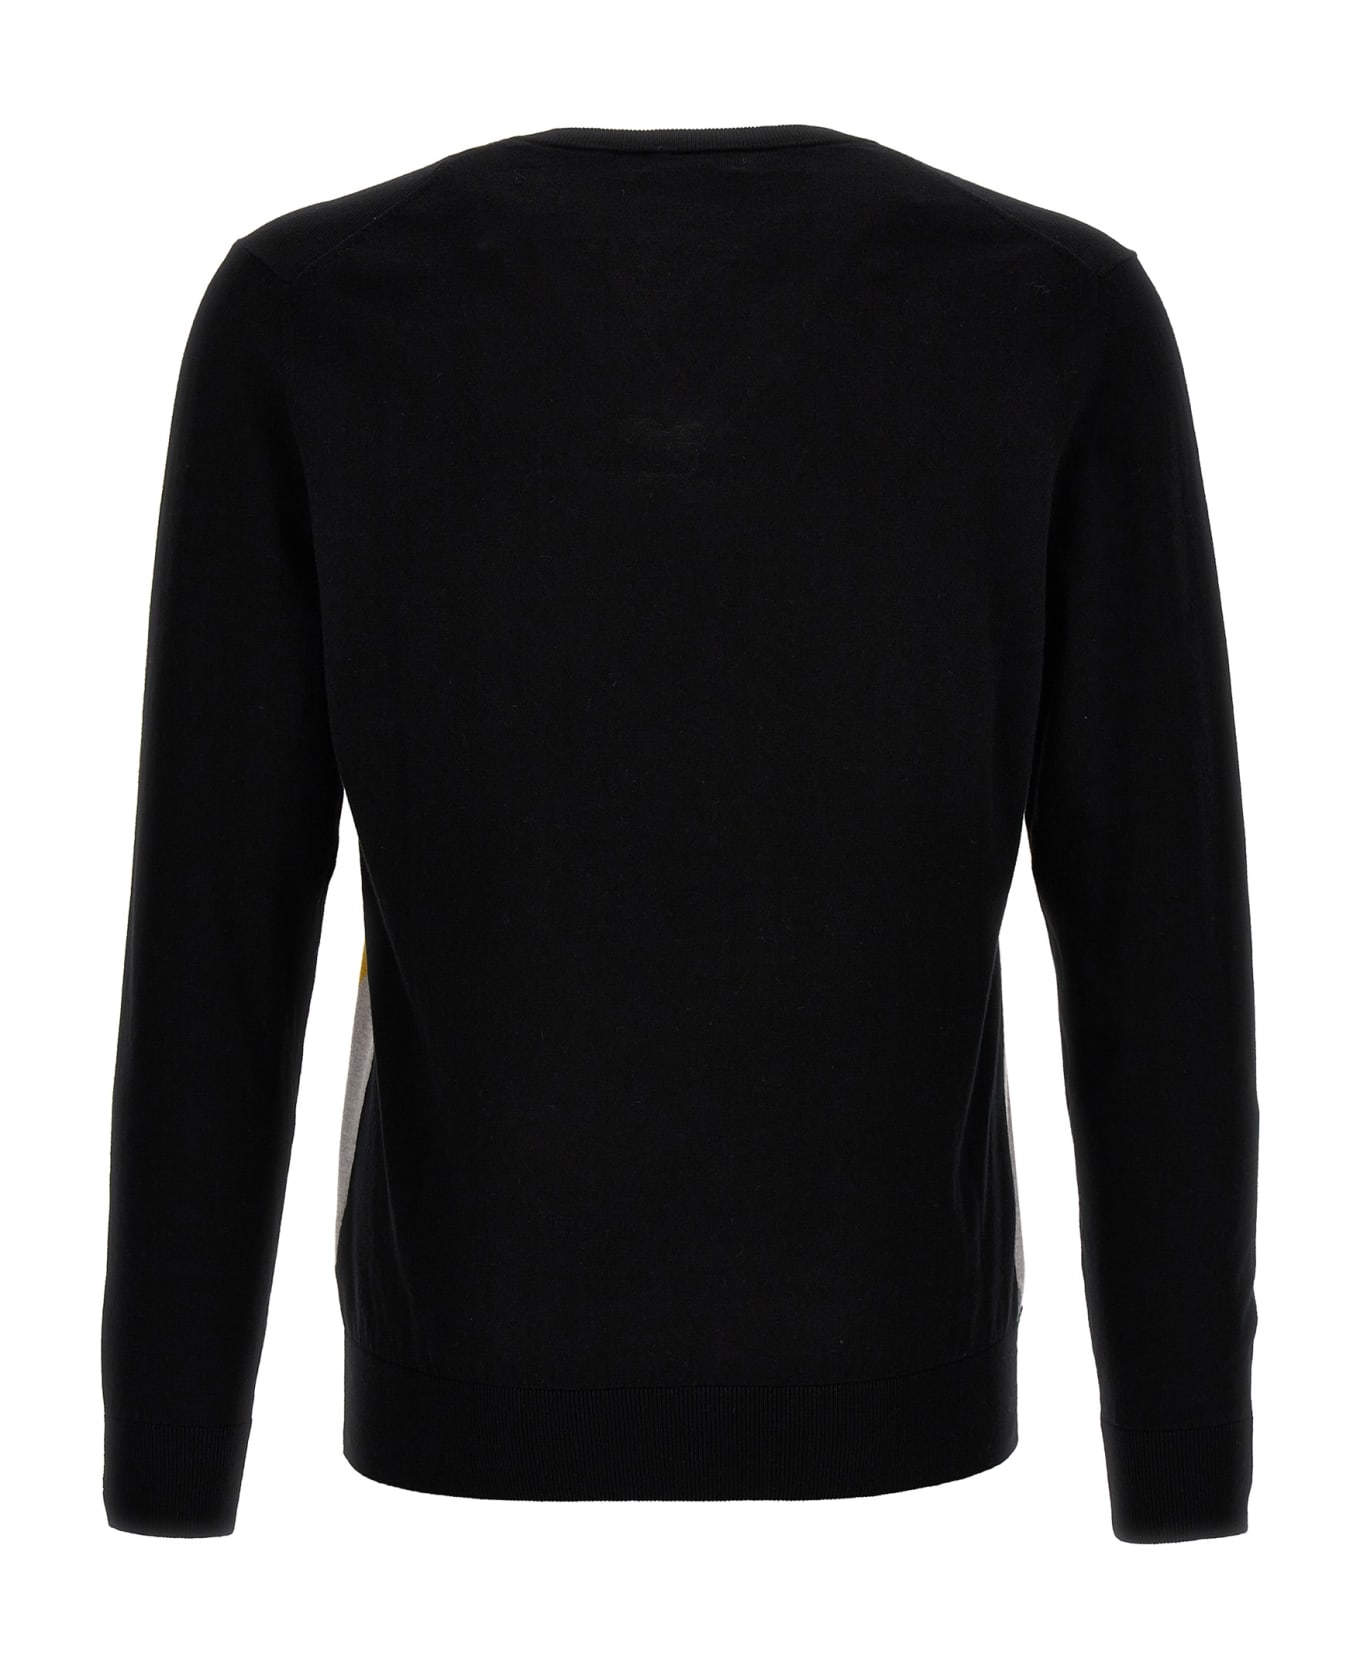 Ballantyne 'argyle' Sweater - Black   ニットウェア